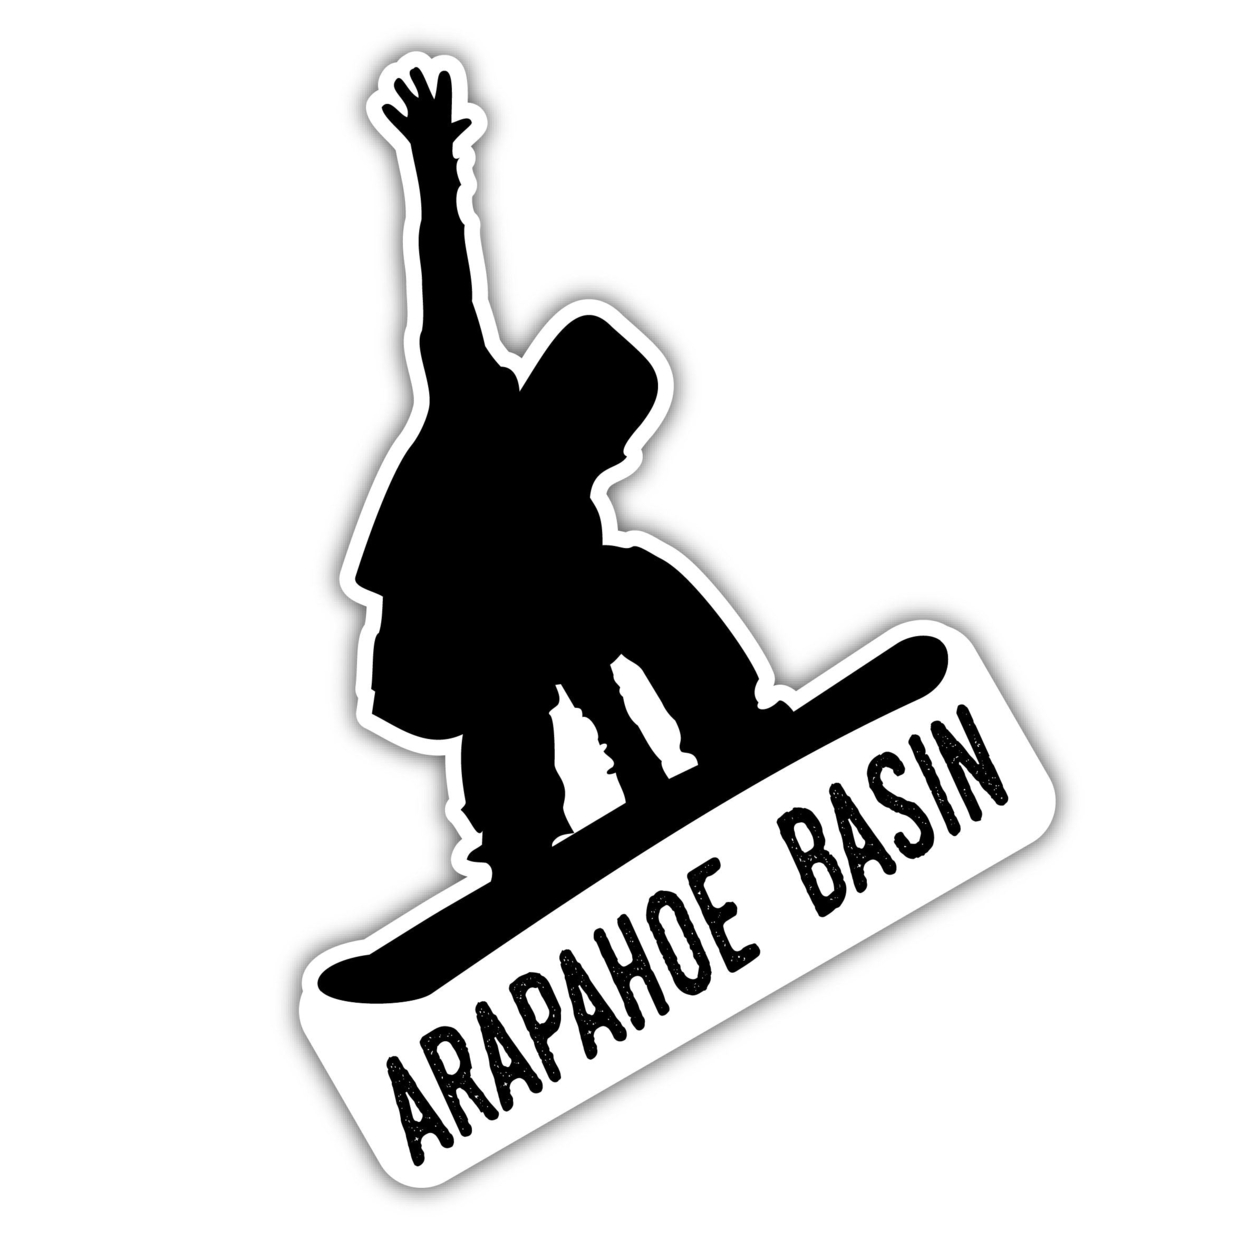 Arapahoe Basin Colorado Ski Adventures Souvenir 4 Inch Vinyl Decal Sticker Board Design